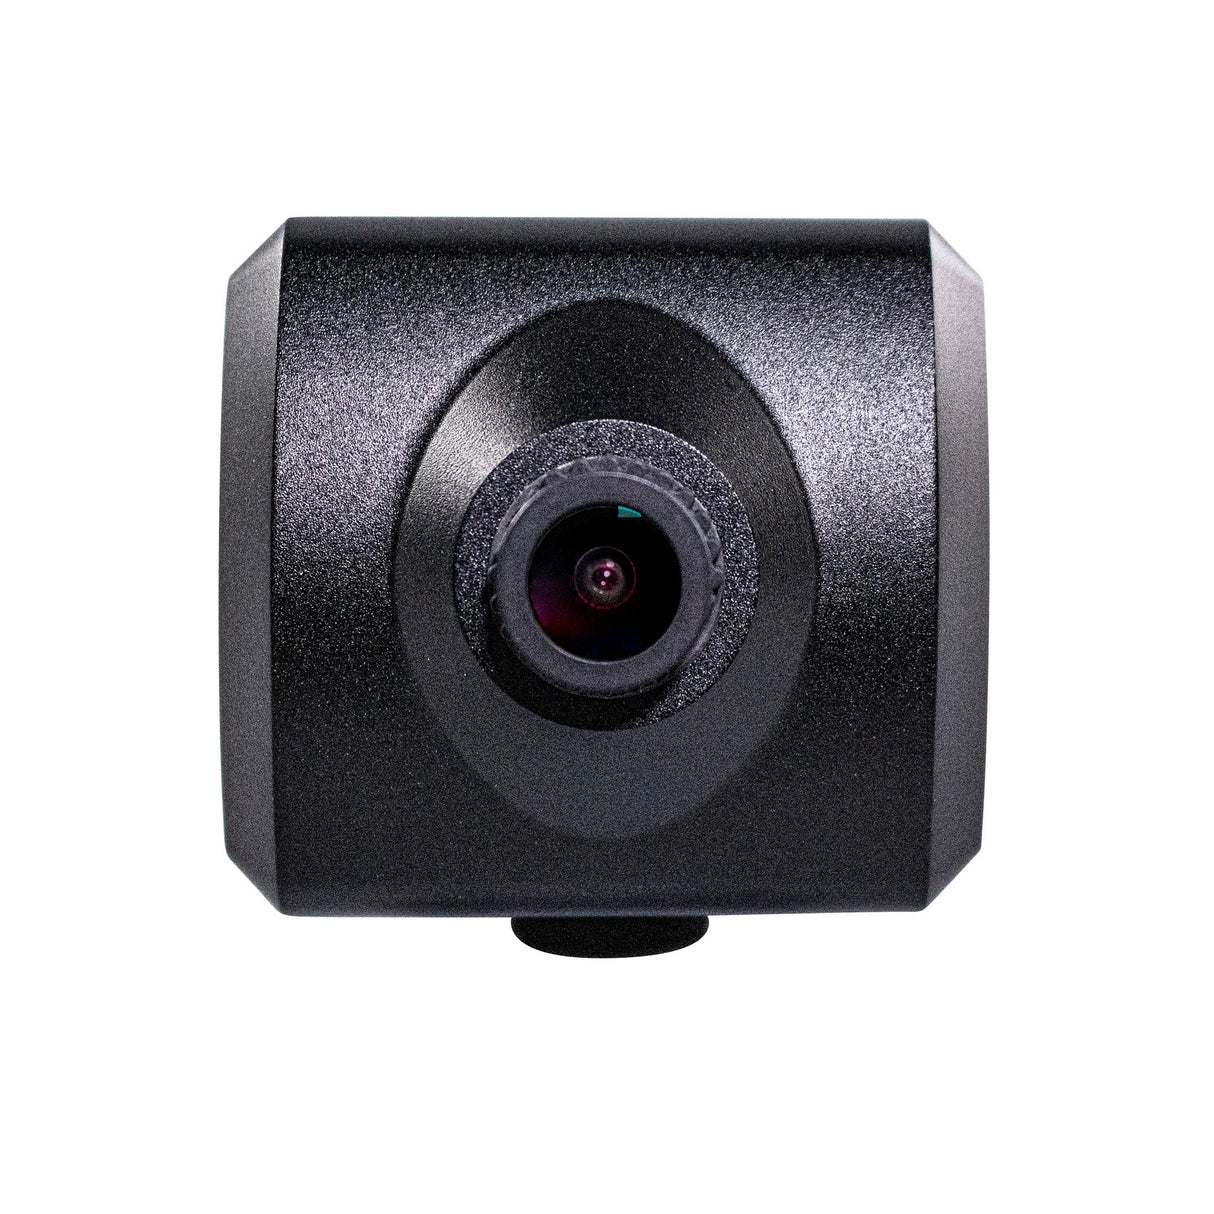 Marshall CV574 NDI|HX3 and HDMI Miniature UHD Camera